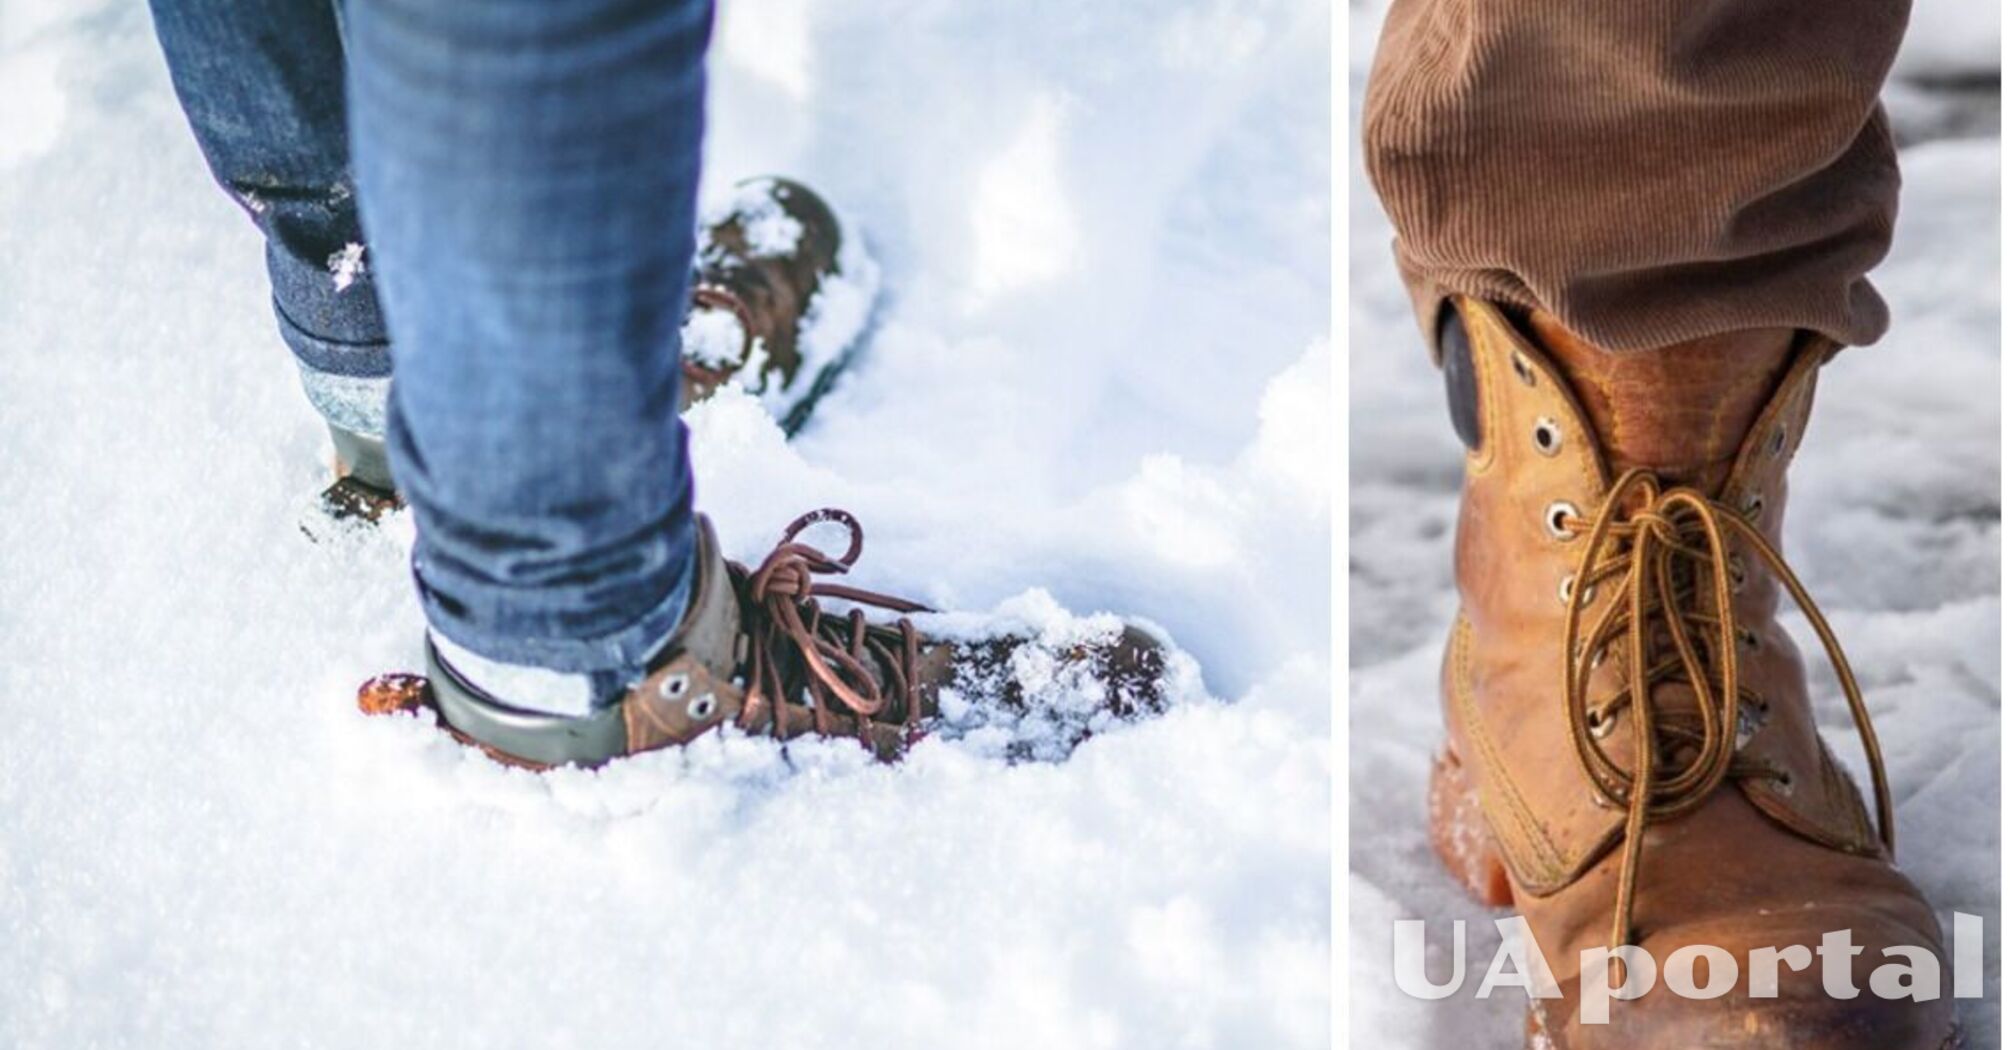 Чим змастити зимове взуття, щоб воно не псувалось через сніг та сіль